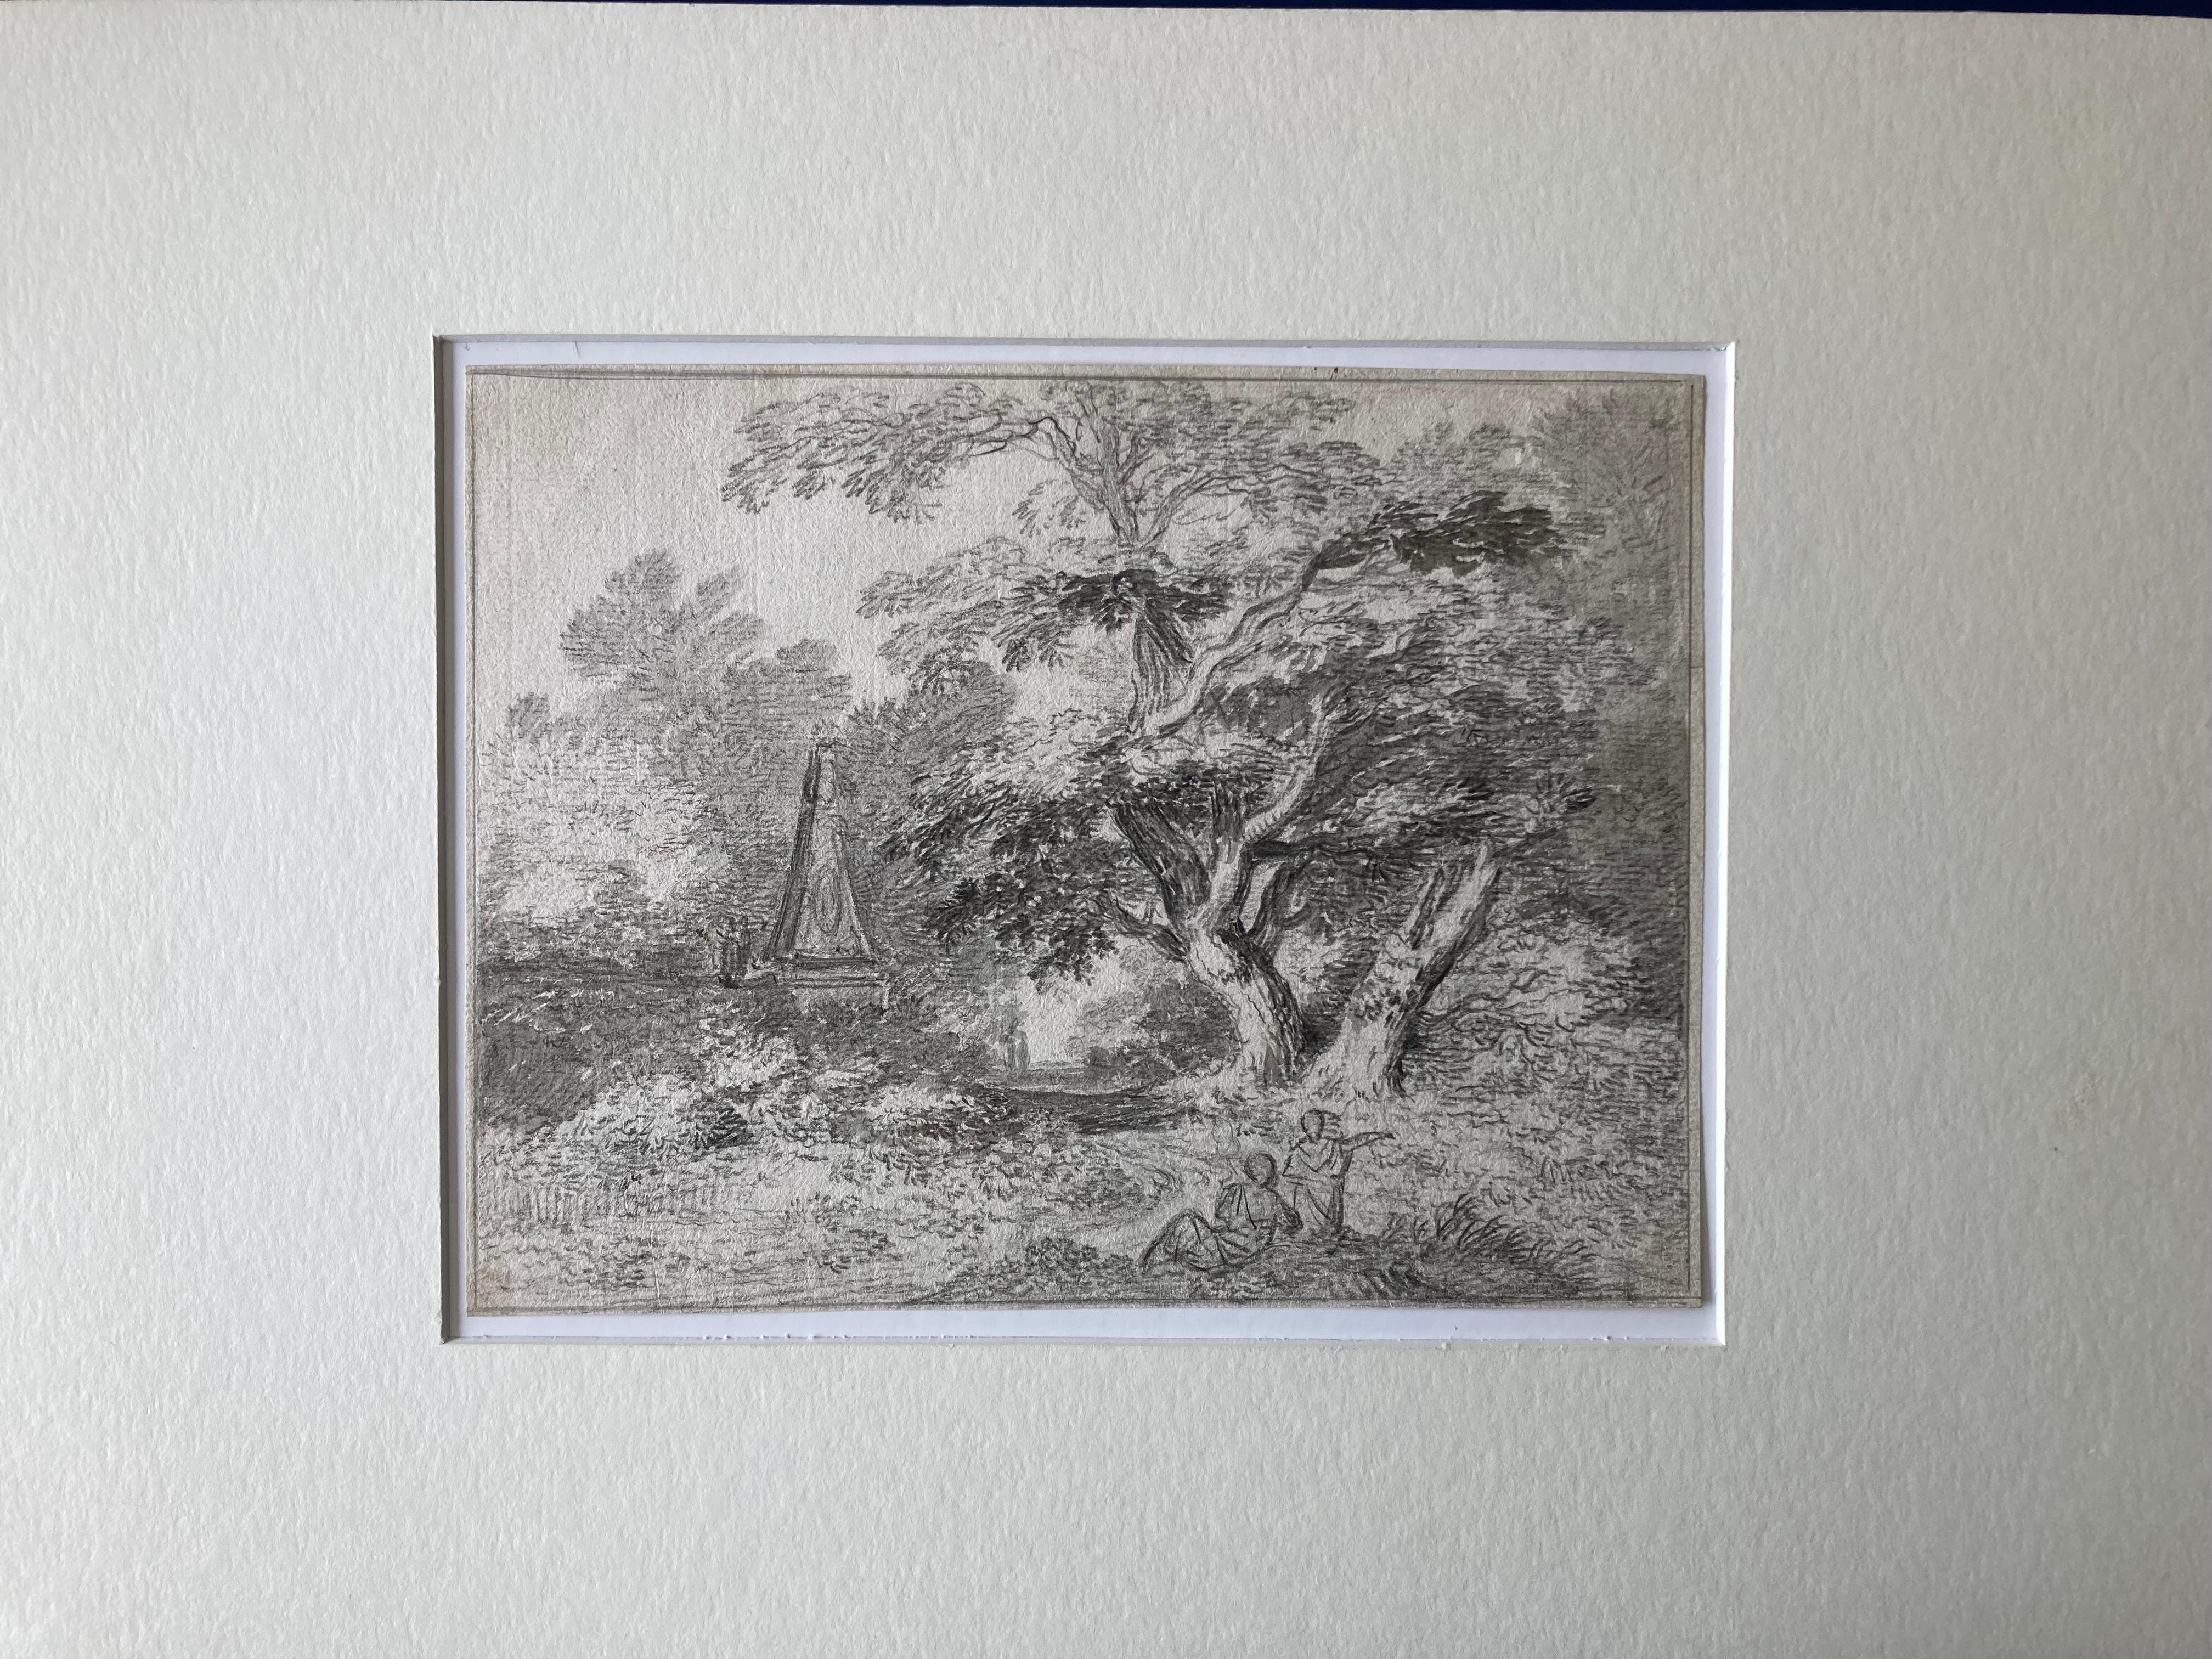 Eine Landschaftsszene, vielleicht in einem Park, mit einem großen Baum und einem Obelisken. Im Vordergrund sind zwei Figuren dargestellt.
Englische Schule
mit der Aufschrift 